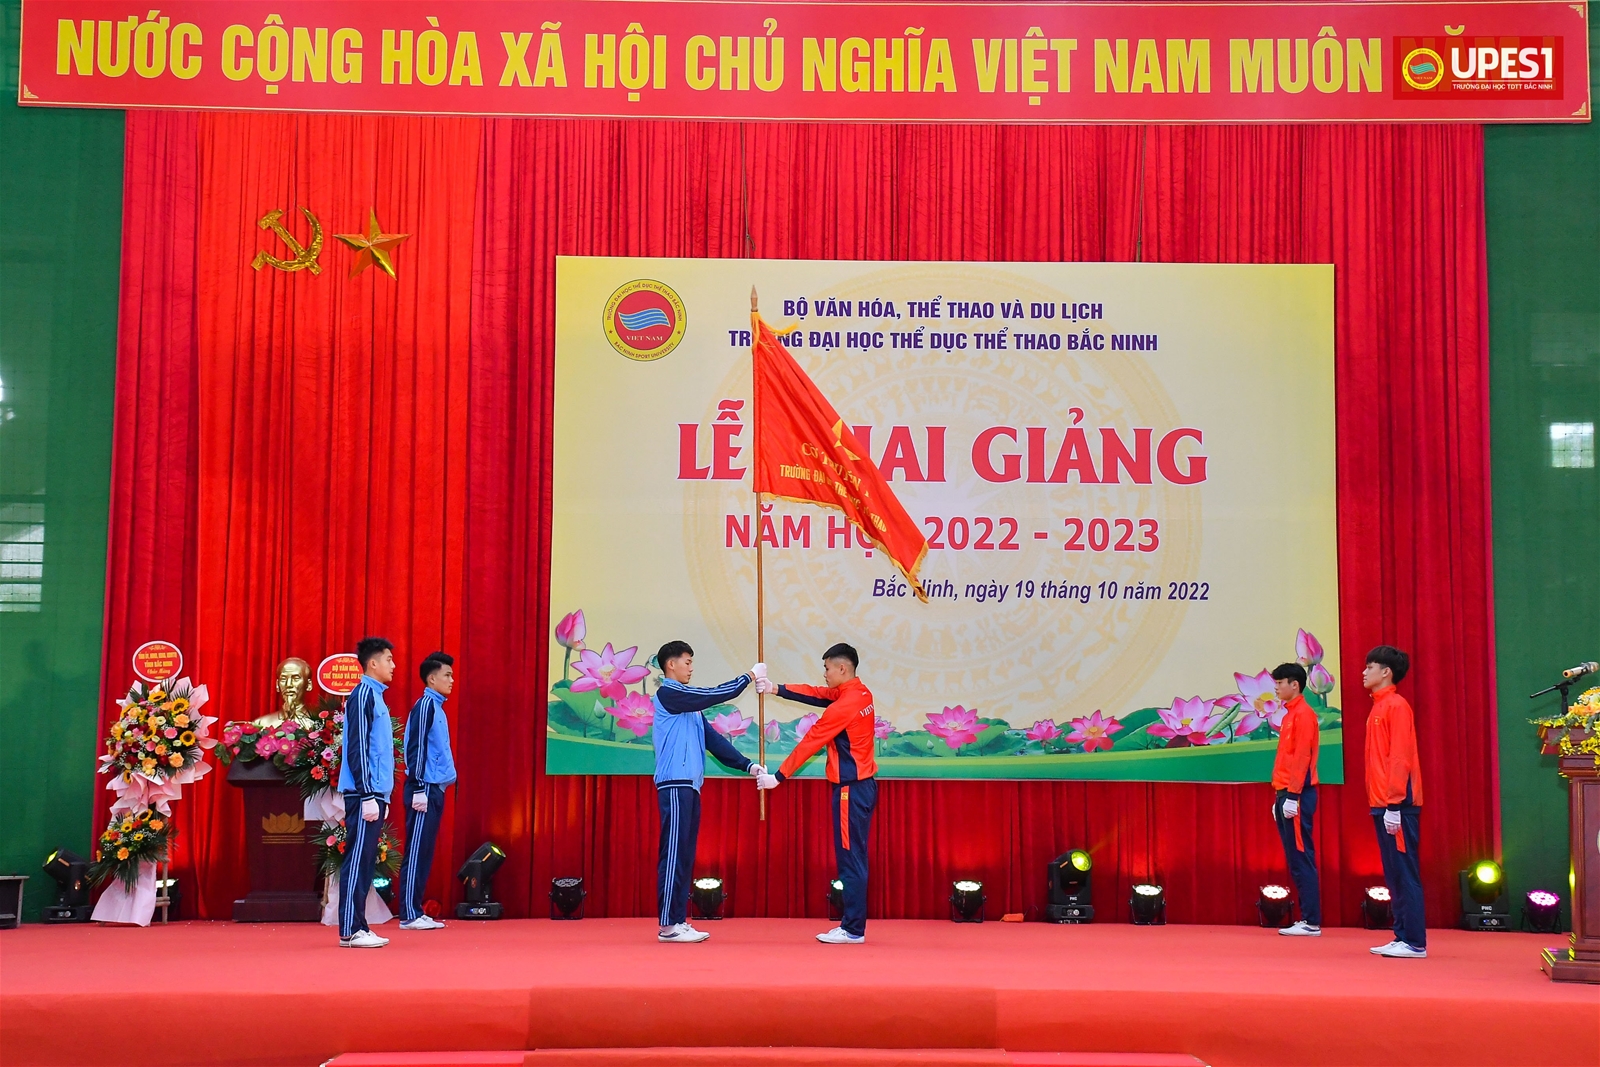 Trường Đại học Thể dục thể thao Bắc Ninh khai giảng năm học 2022-2023